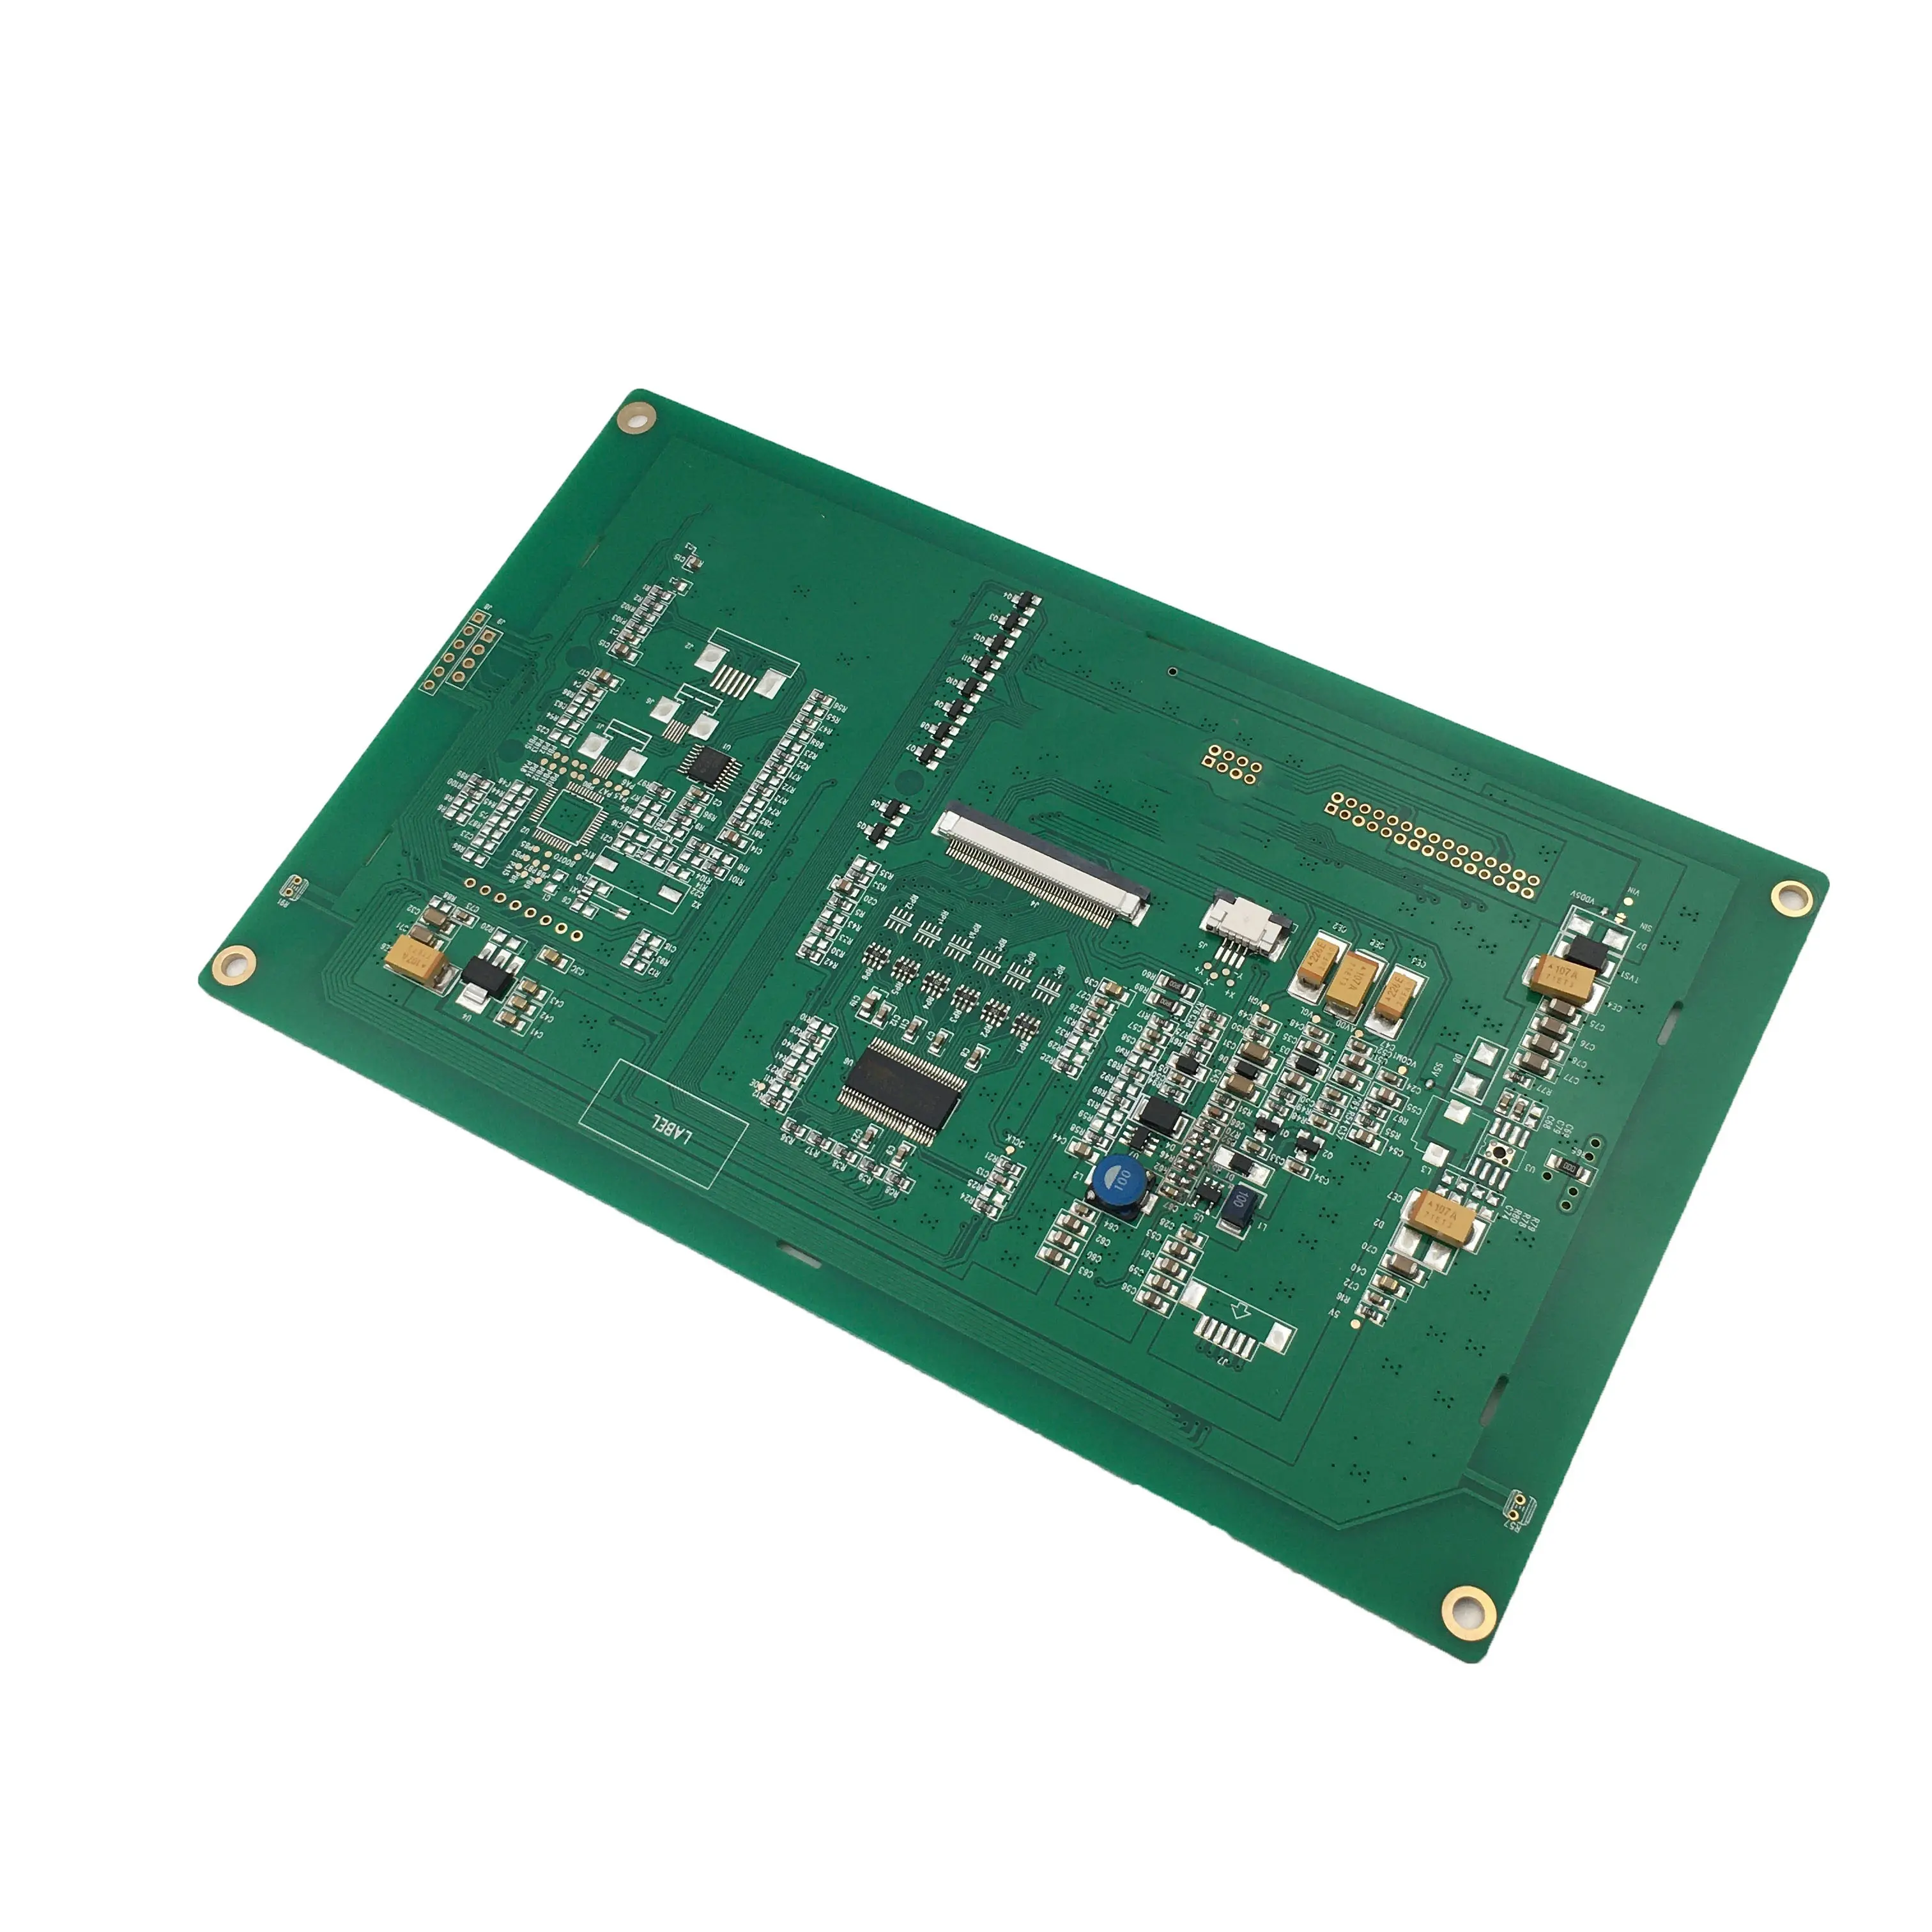 사용자 정의 GSM 무선 통신 모듈 PCB 어셈블리 제조 업체 ODM 모뎀 공급 업체 PCBA 개발